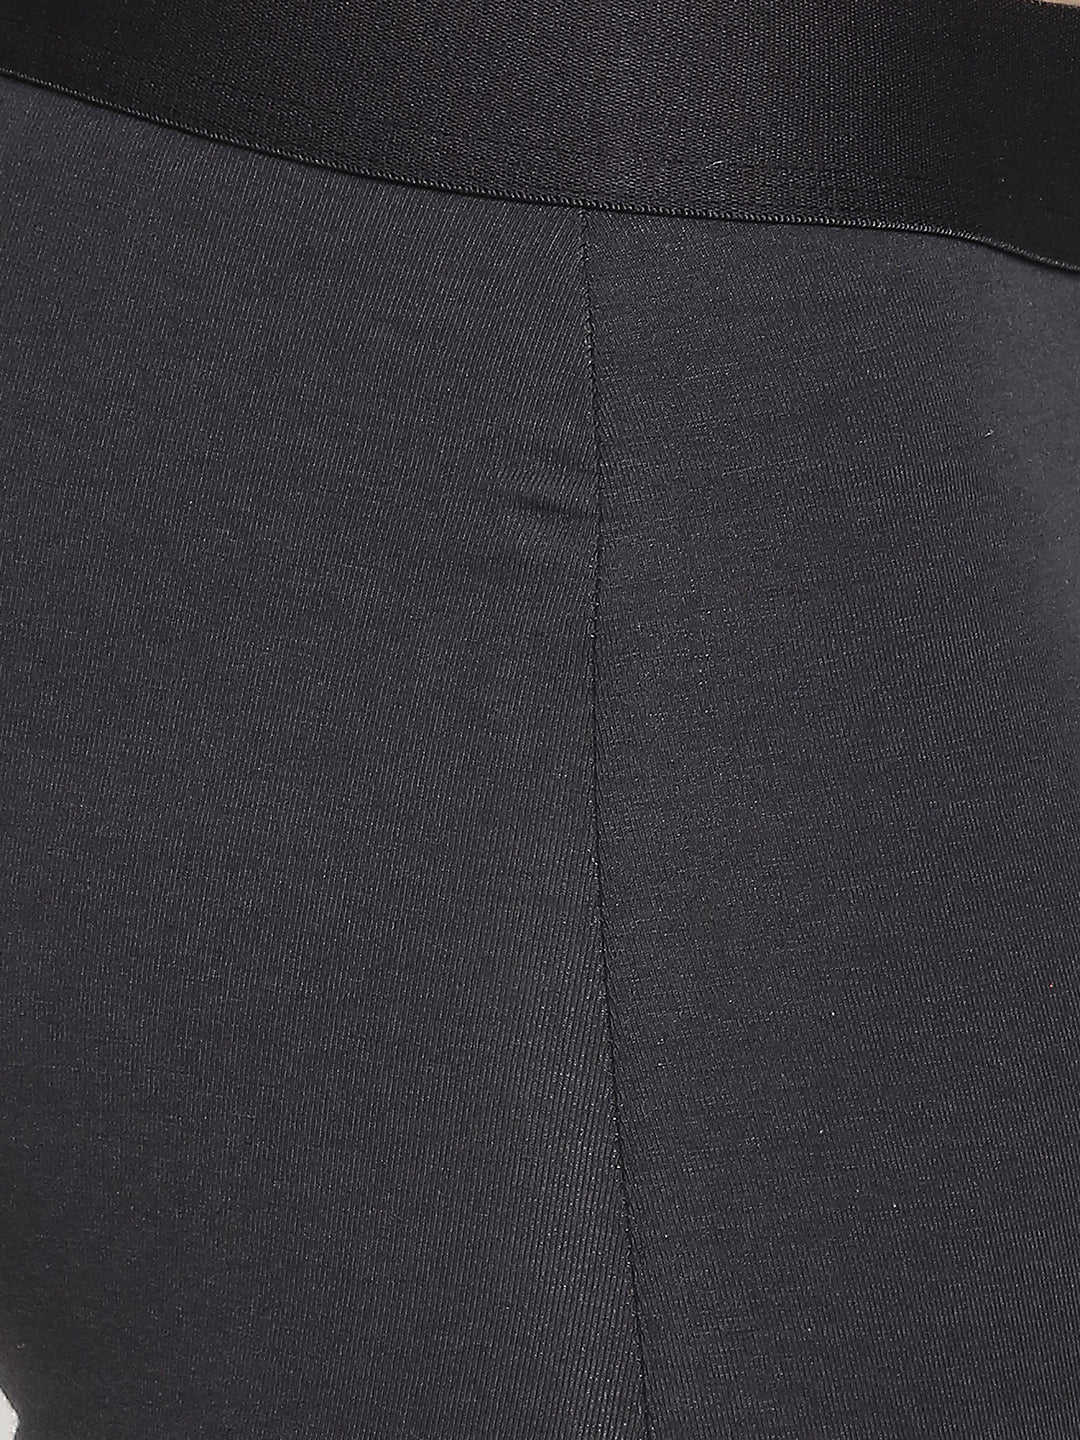 Men Premium Cotton Blend Dark Grey Trunk- UnderJeans by Spykar